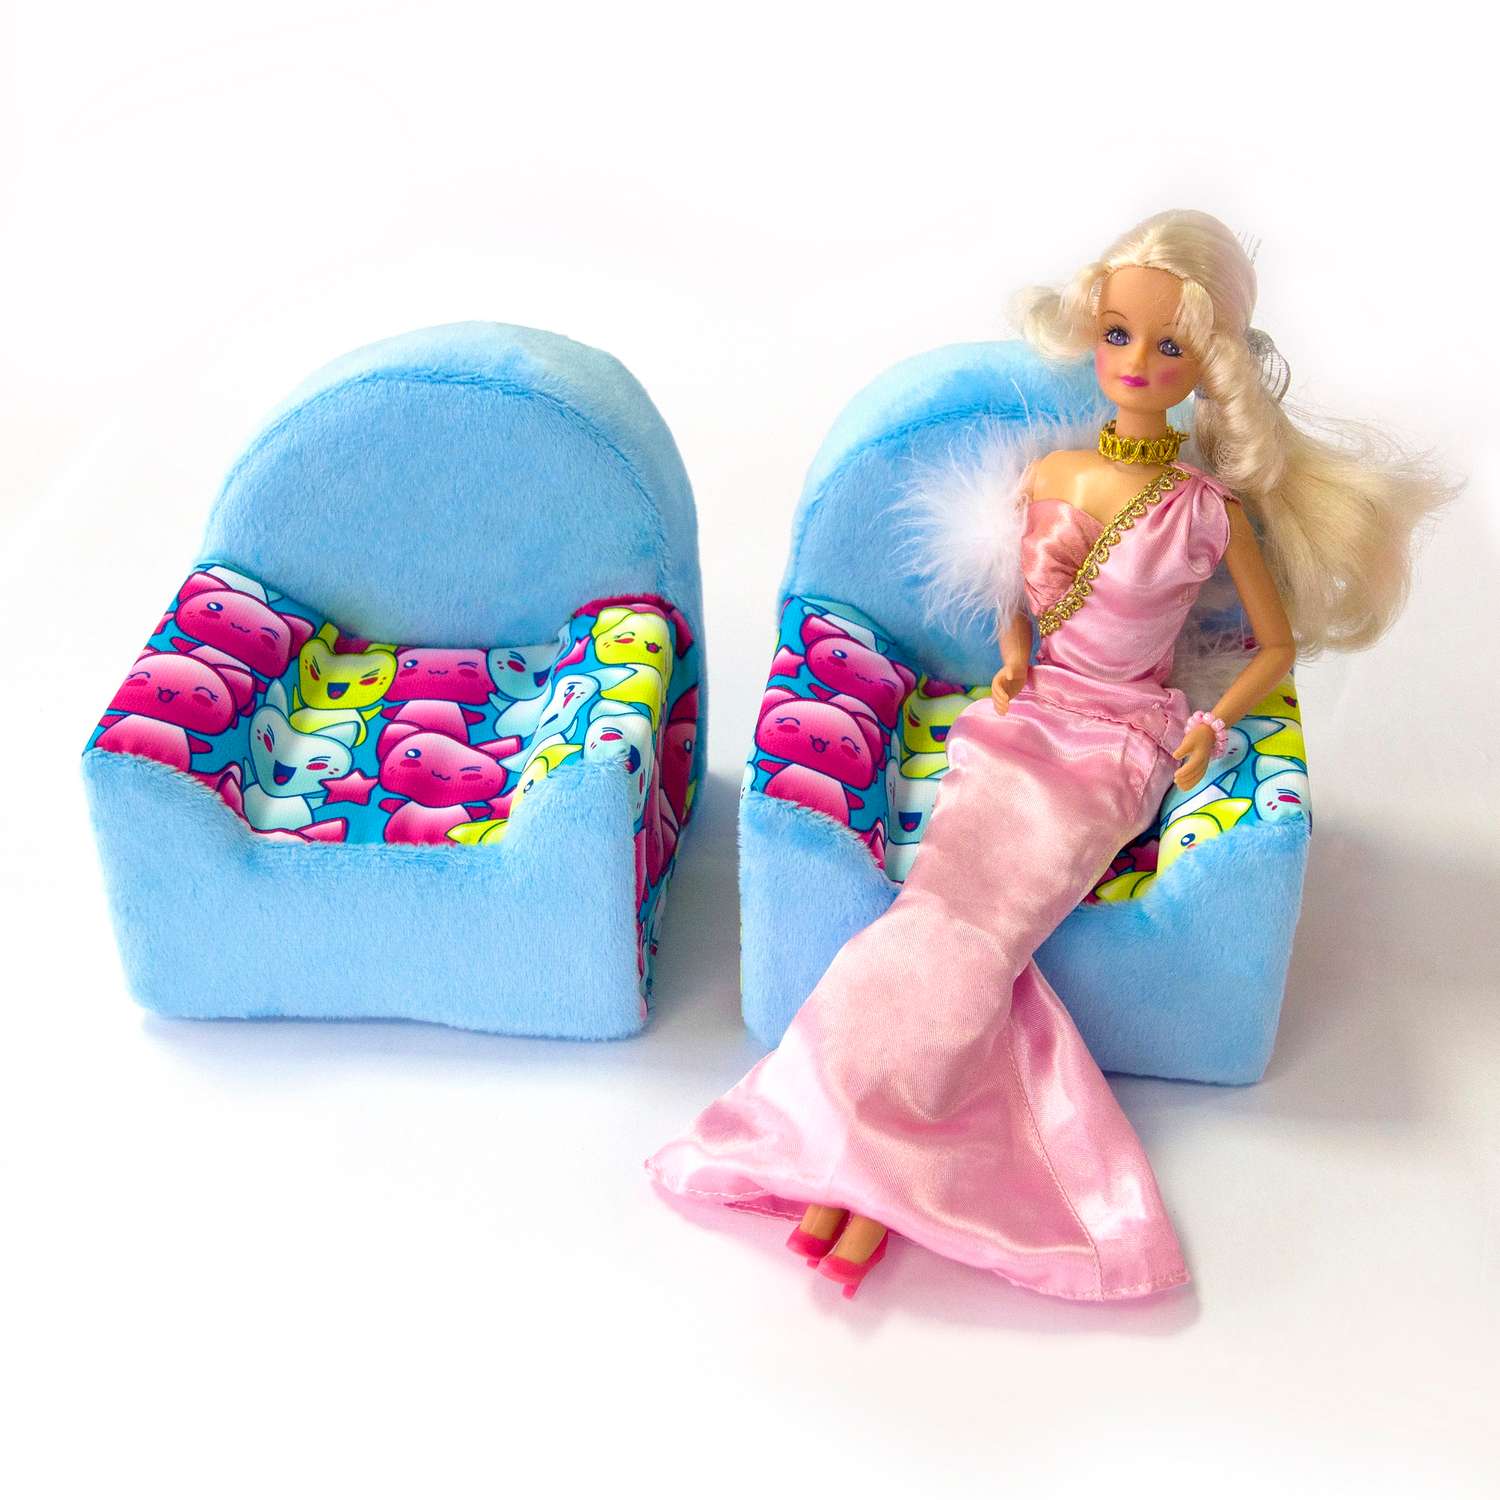 Набор мебели для кукол Belon familia Принт хор котят бирюзовый 2 кресла с подушками НМ-001/1-32 - фото 6